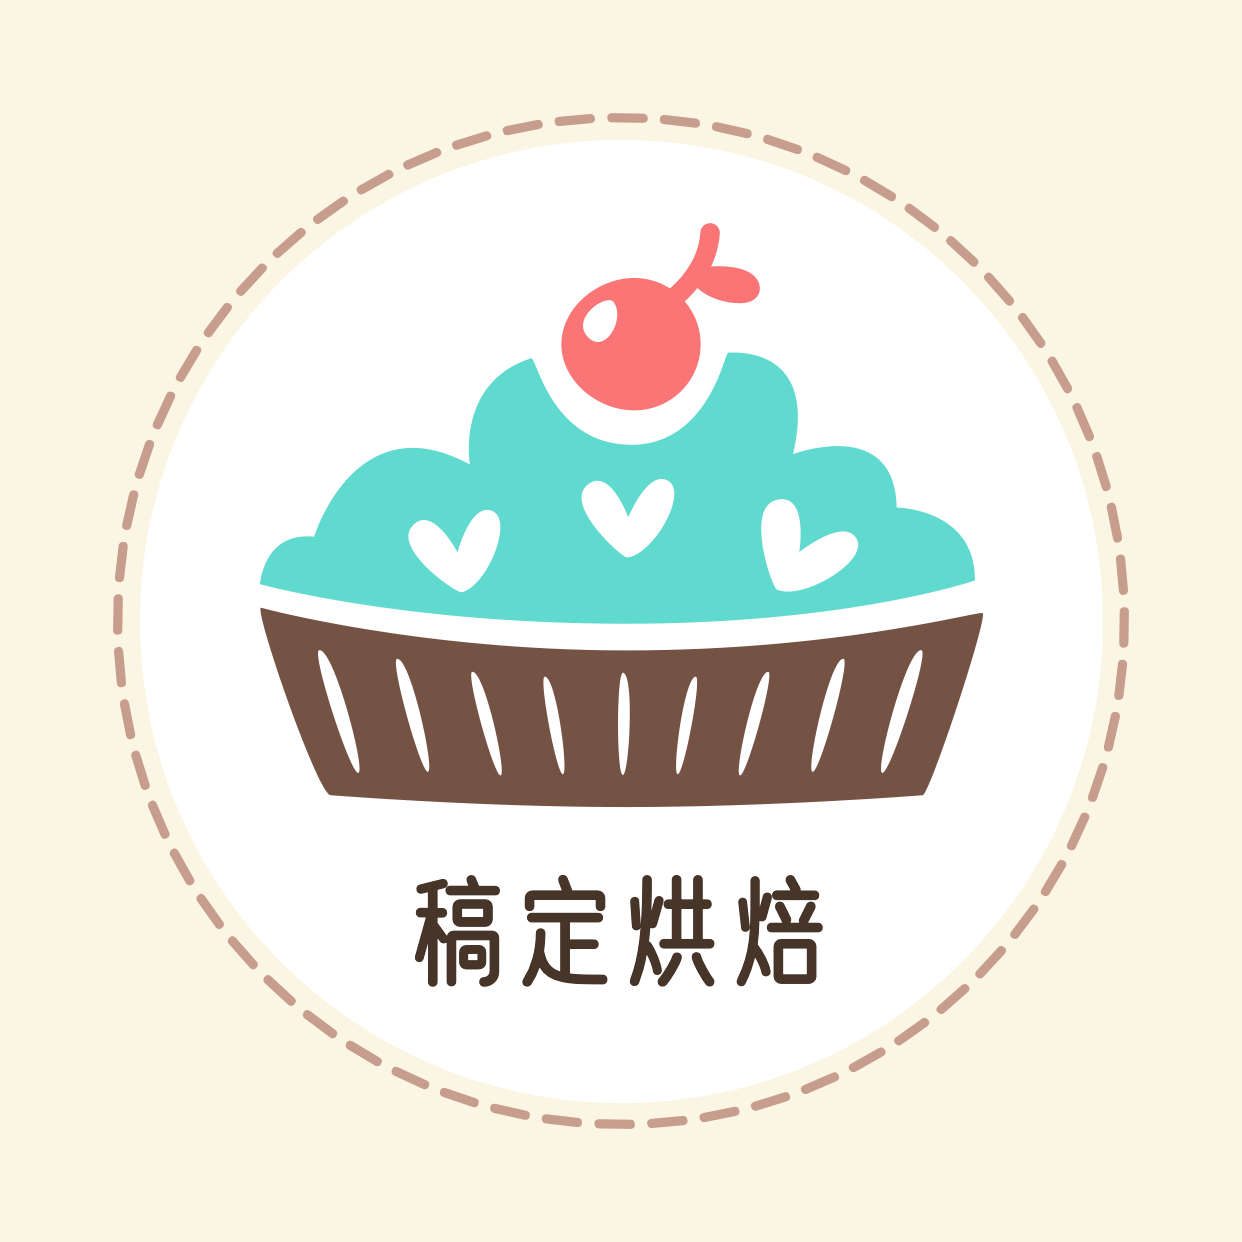 烘焙甜品卡通手绘可爱头像logo预览效果